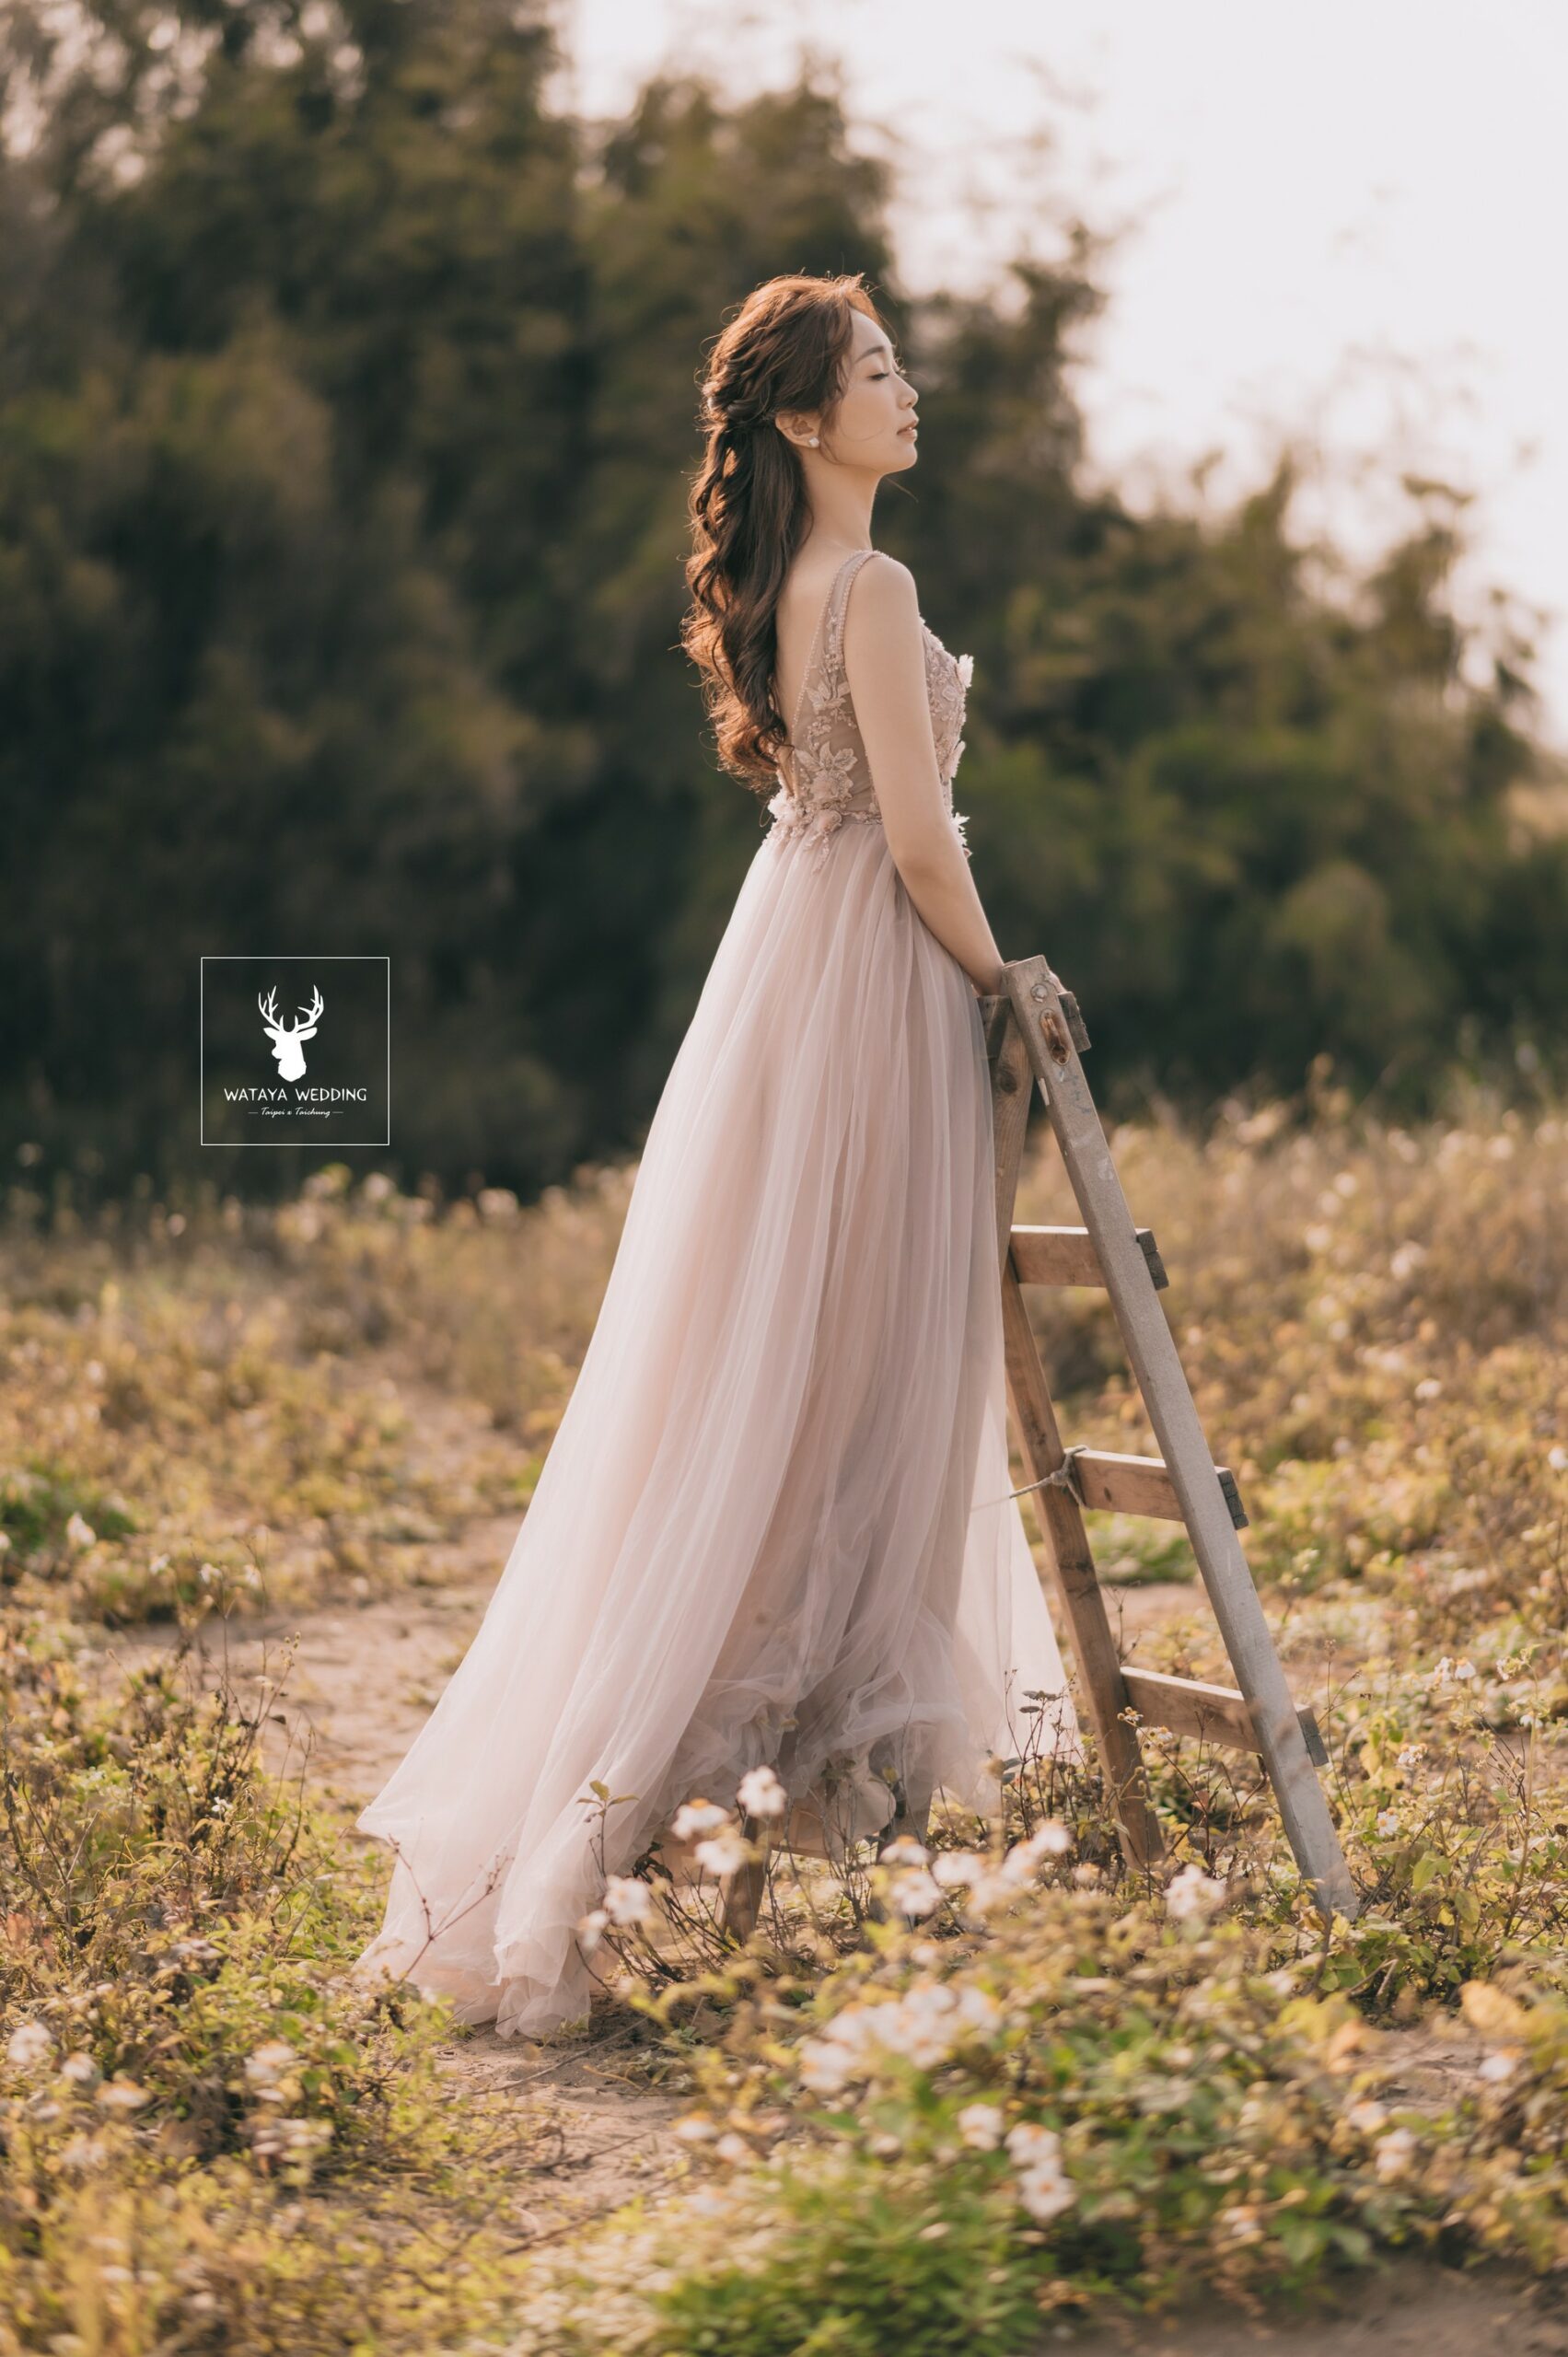 綿谷結婚式-婚紗攝影作品 (19)